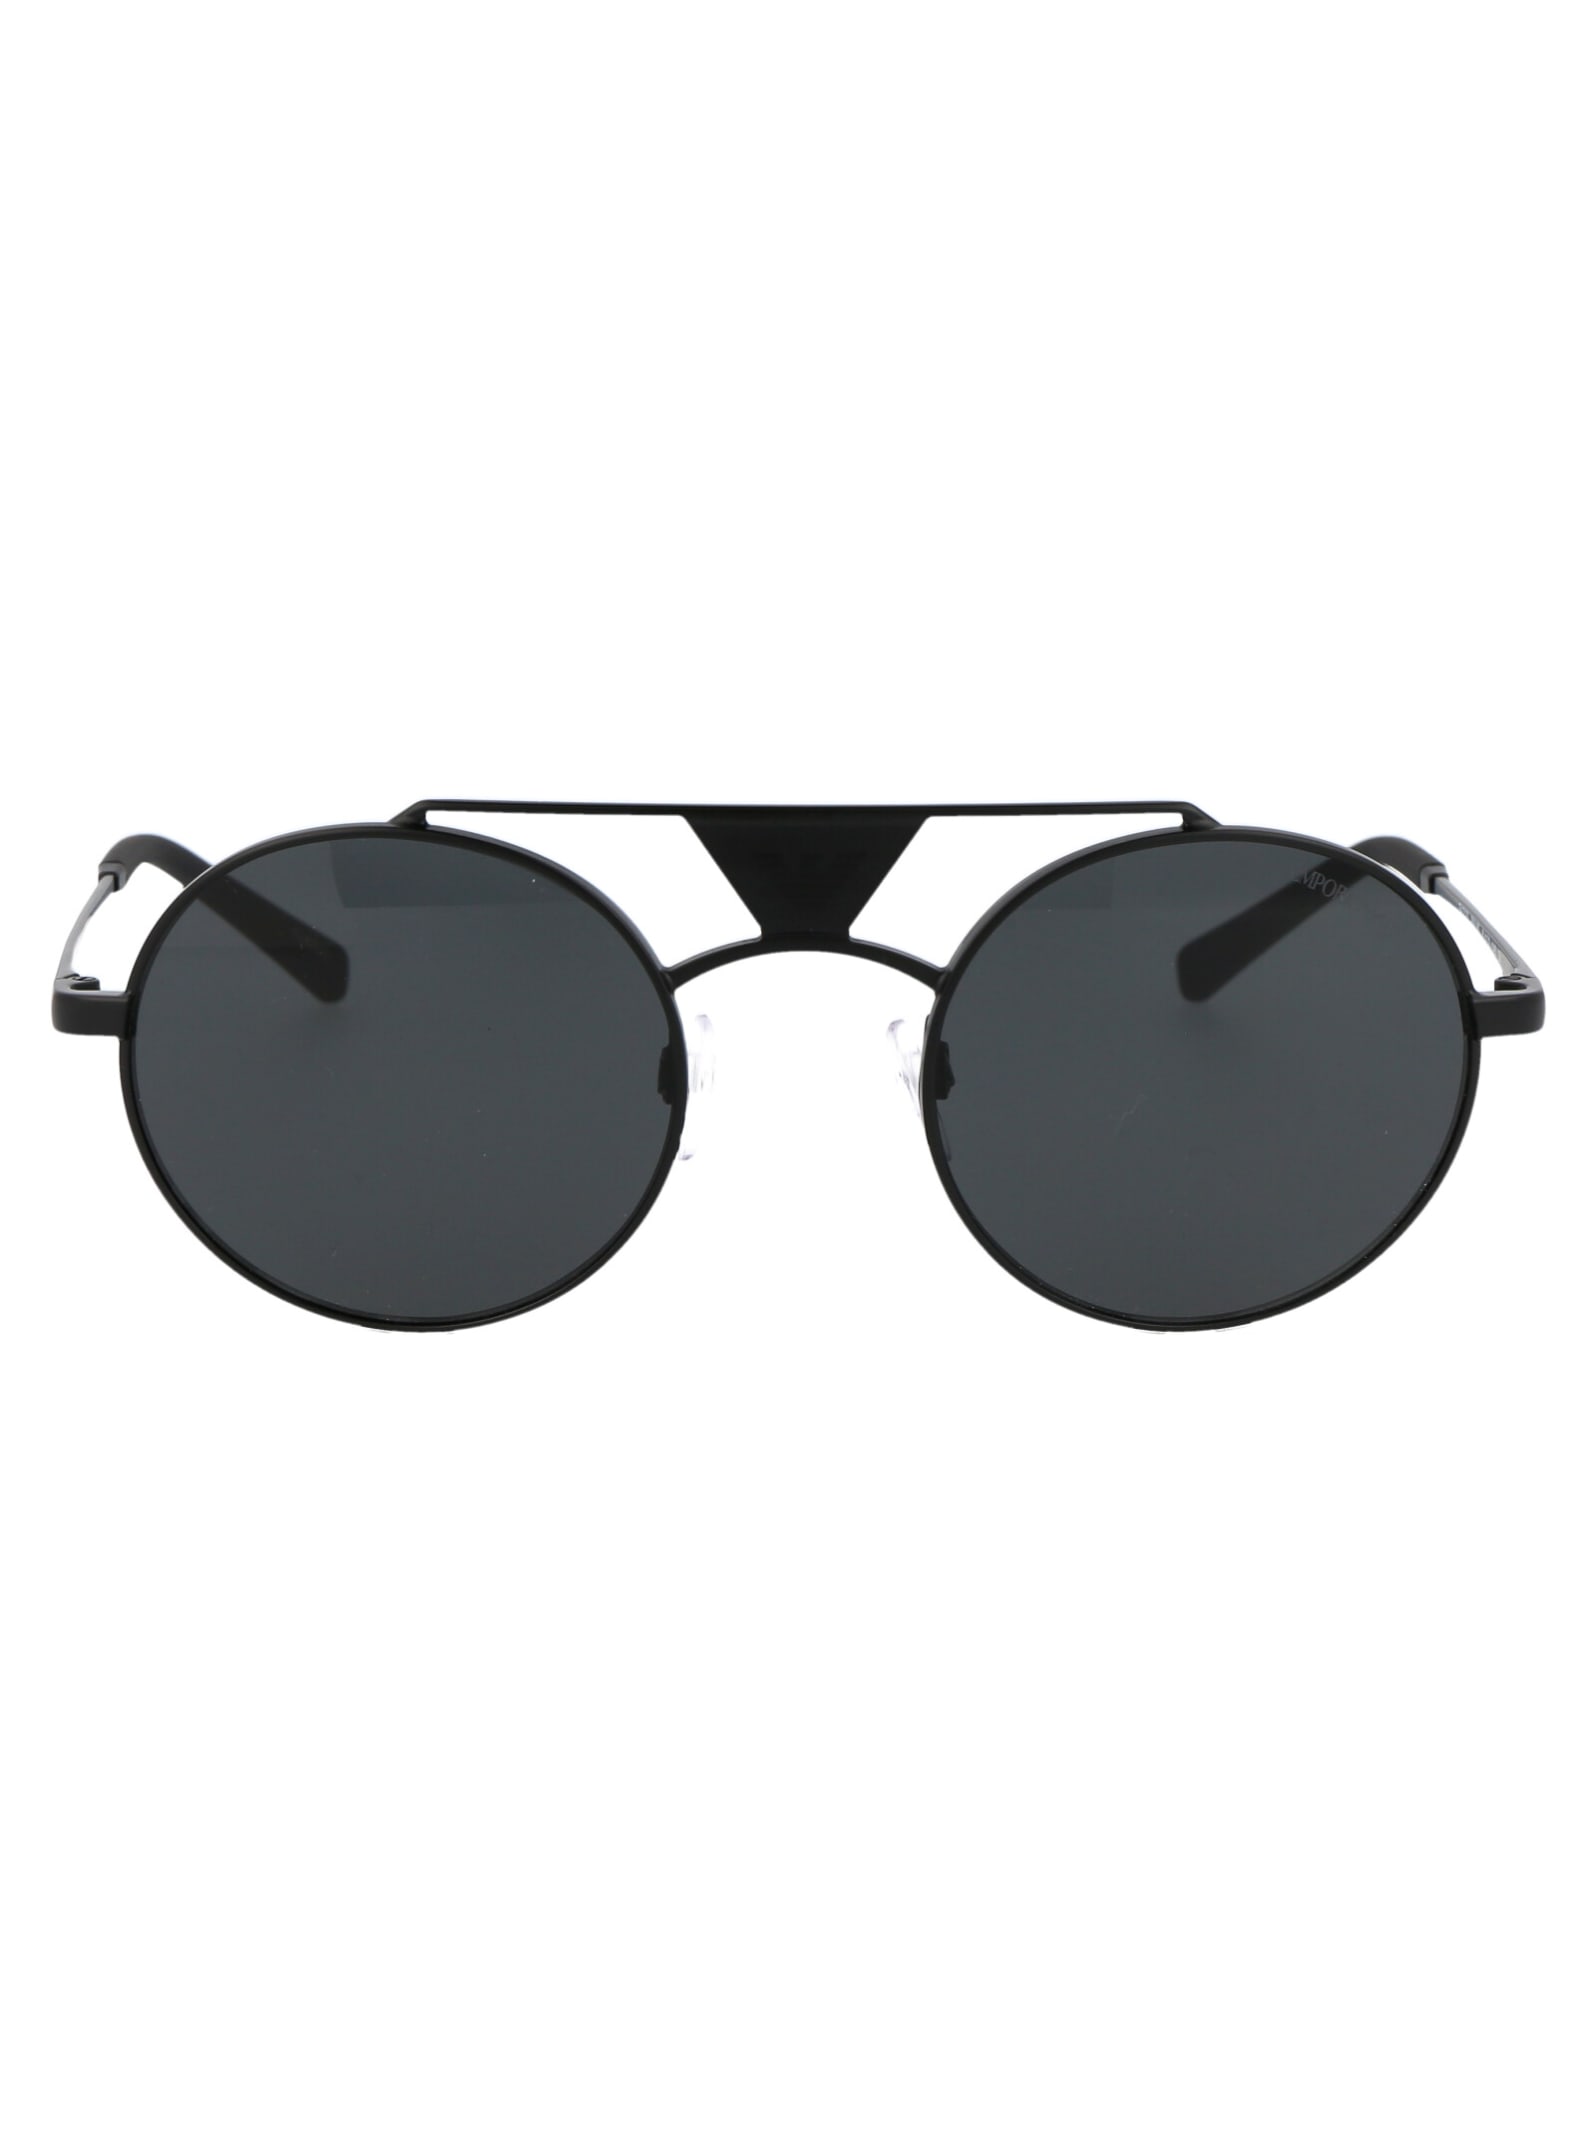 Emporio Armani 0ea2120 Sunglasses